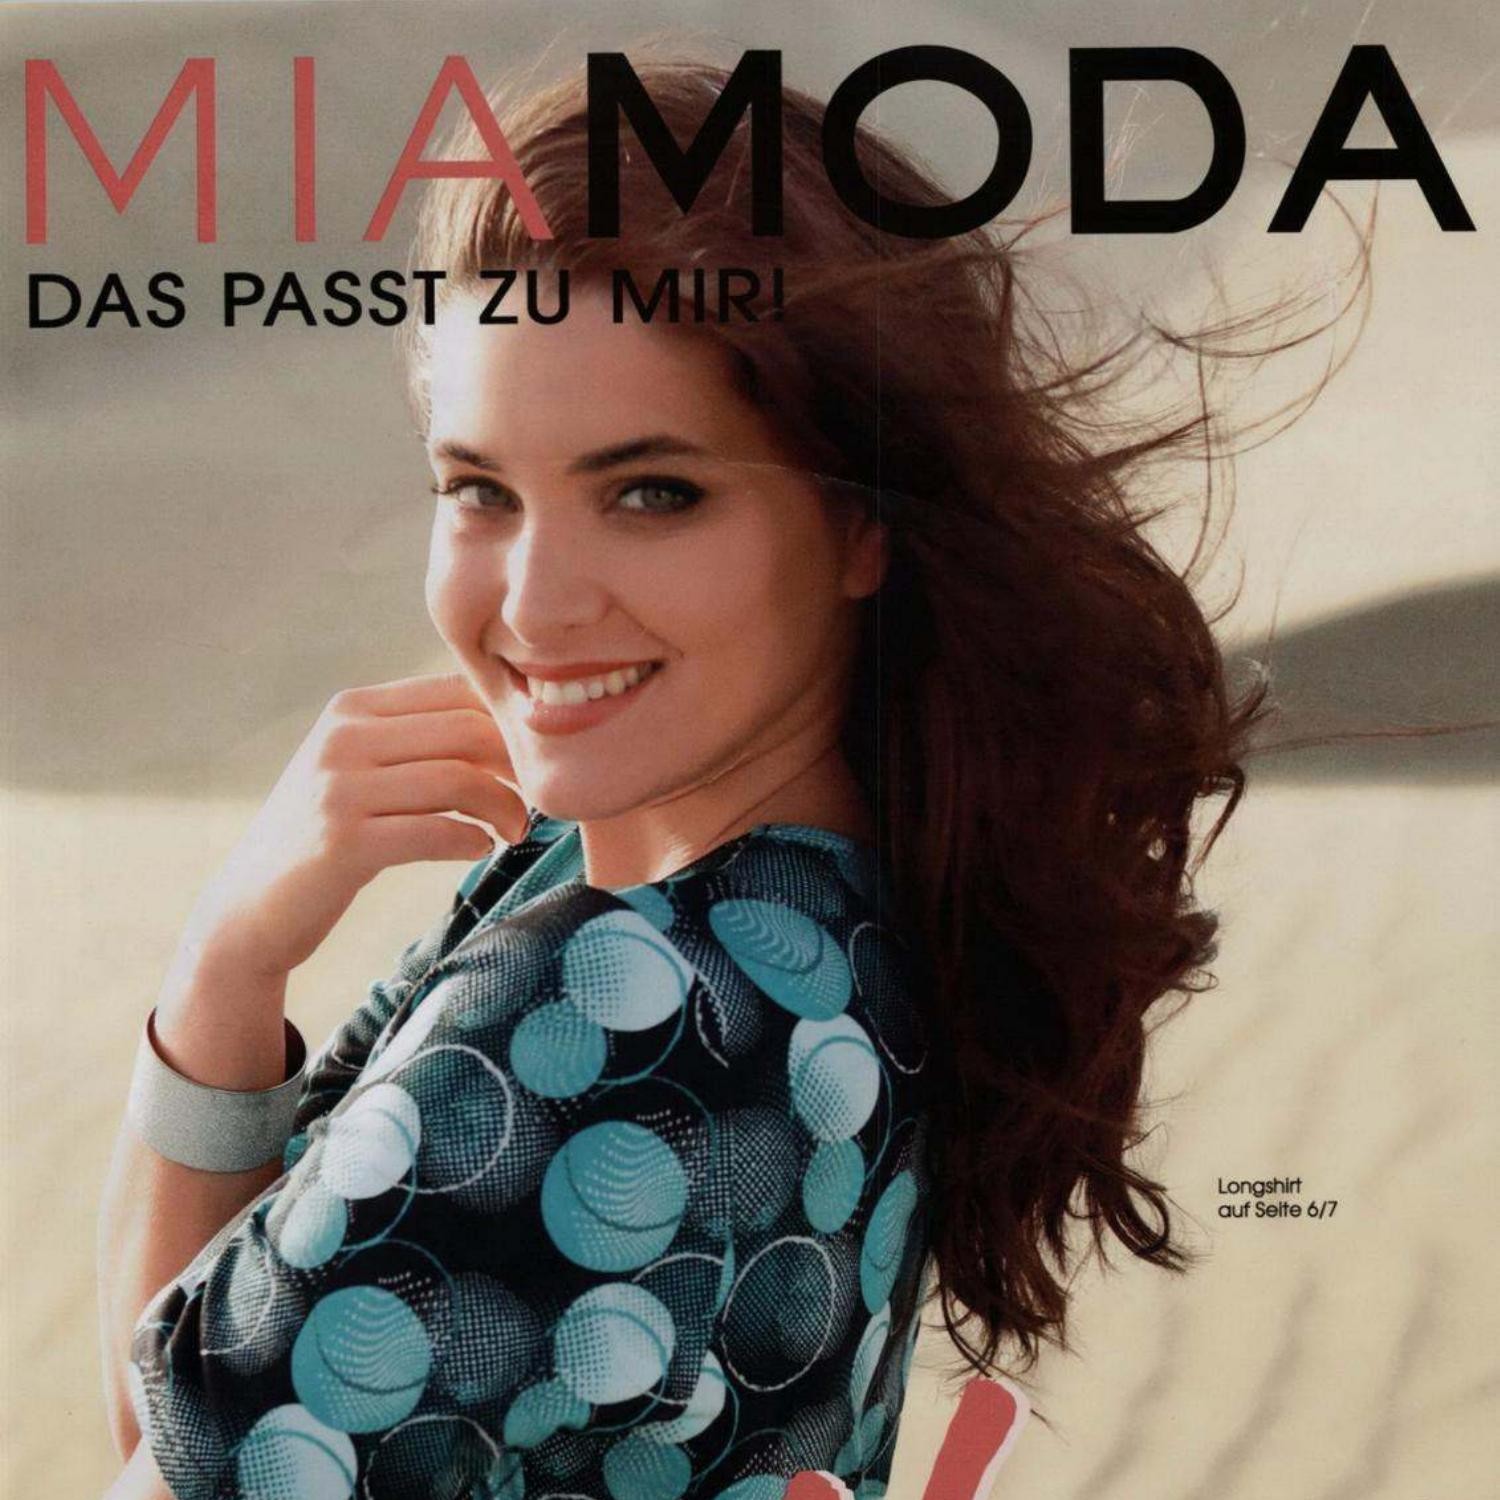 Mia Moda Autumn 2020.pdf | DocDroid